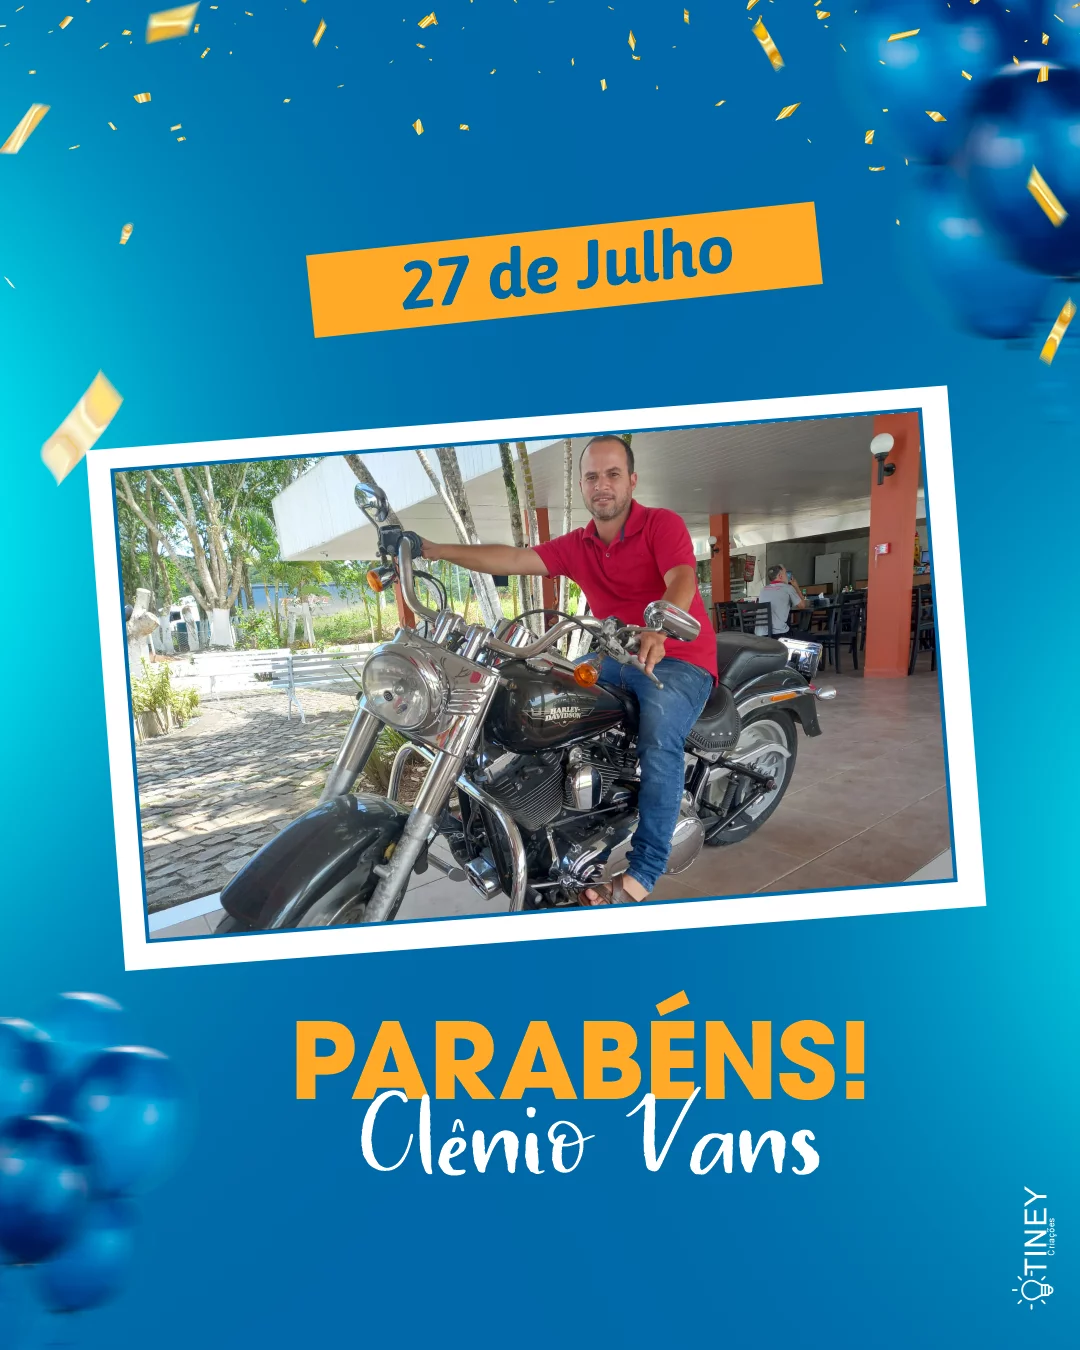 JATOBÁ: Aniversariante do dia, Clênio Vans recebe mensagem de parabéns de familiares e amigos